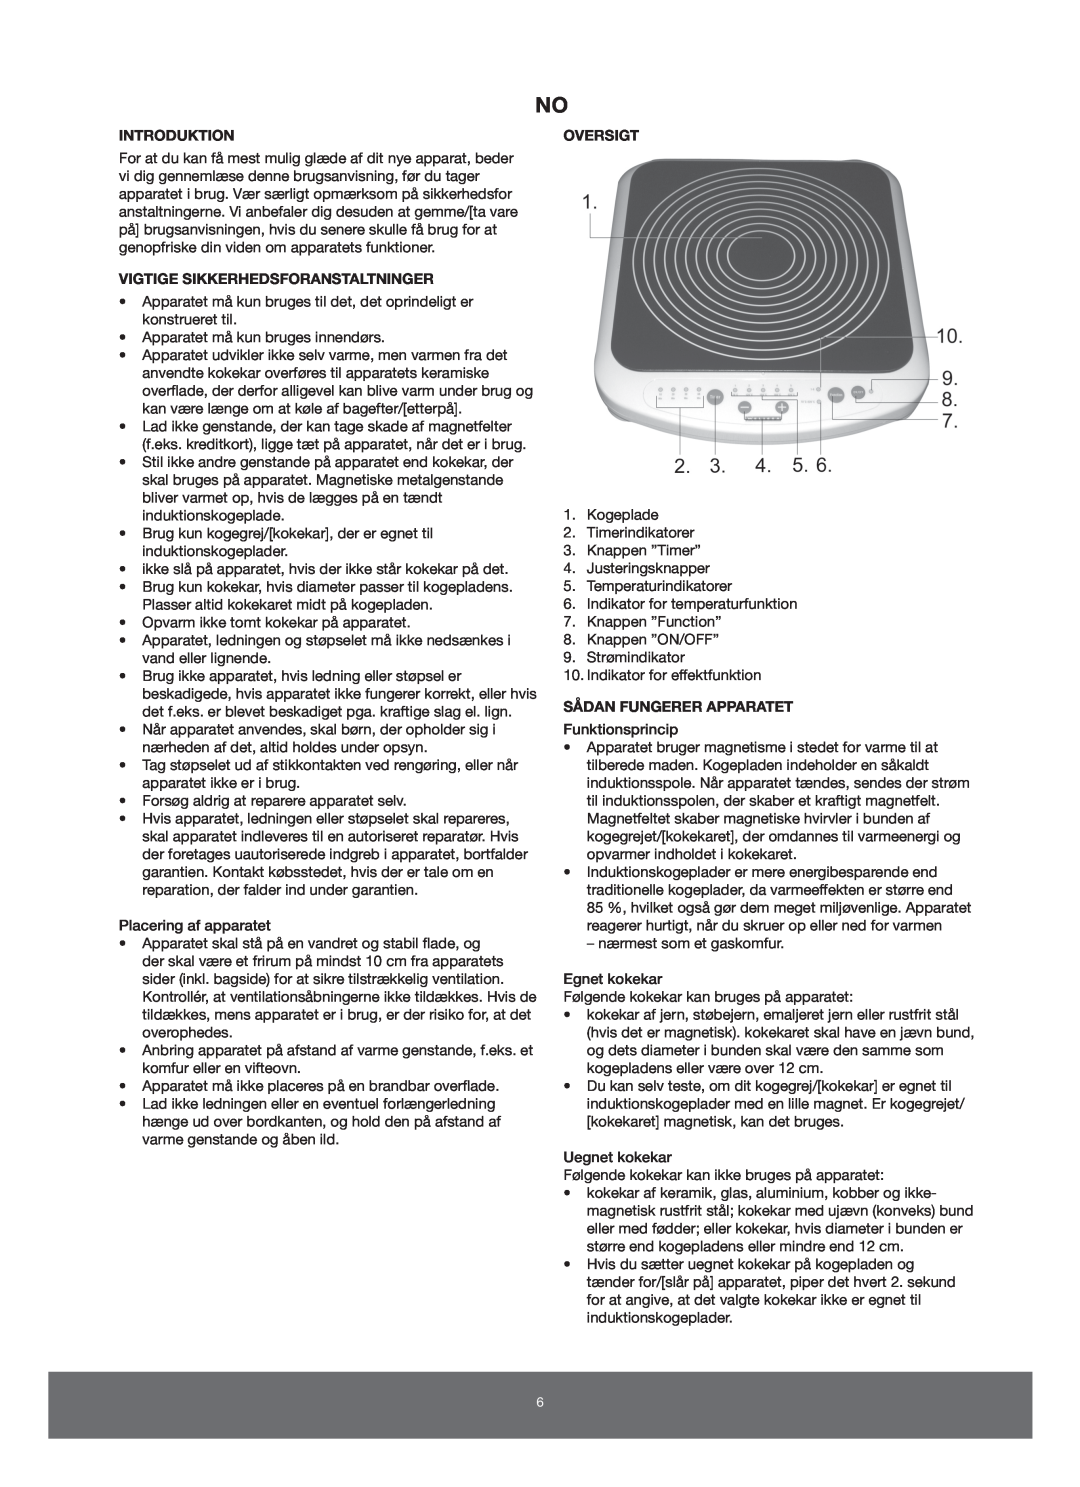 Melissa 650-005 manual Introduktion, Vigtige Sikkerhedsforanstaltninger, Oversigt, Sådan Fungerer Apparatet 